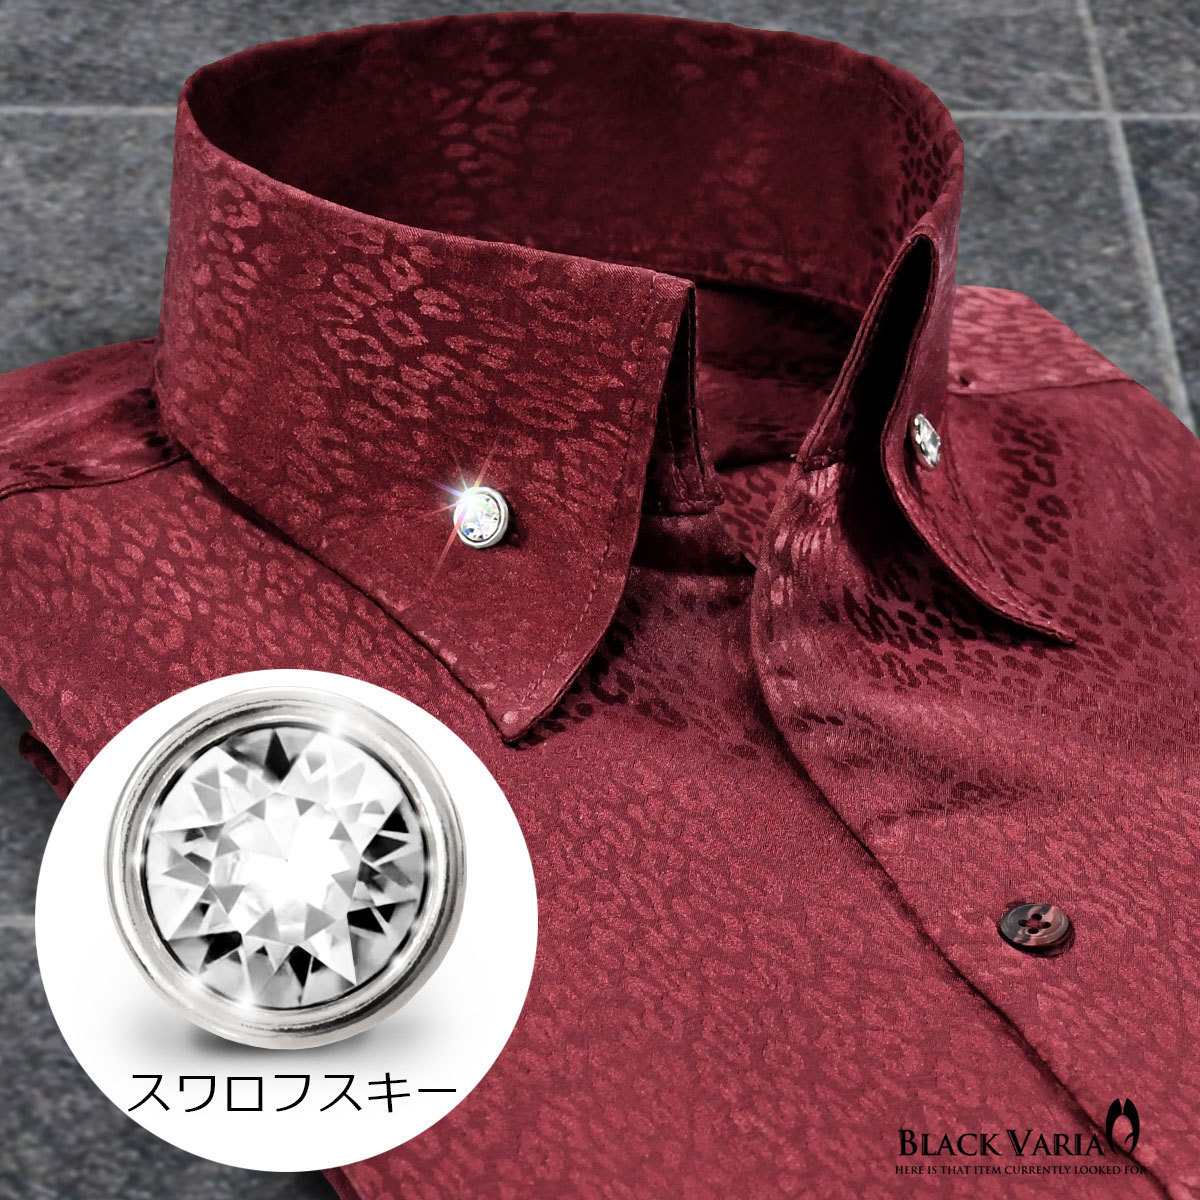 191853-winS BLACK VARIA ジャガード豹柄 スキッパー スワロフスキーBD ドレスシャツ スリム メンズ(ブラックダイヤ釦 ワイン赤) XL 衣装_襟元ボタンはブラックダイヤ釦です